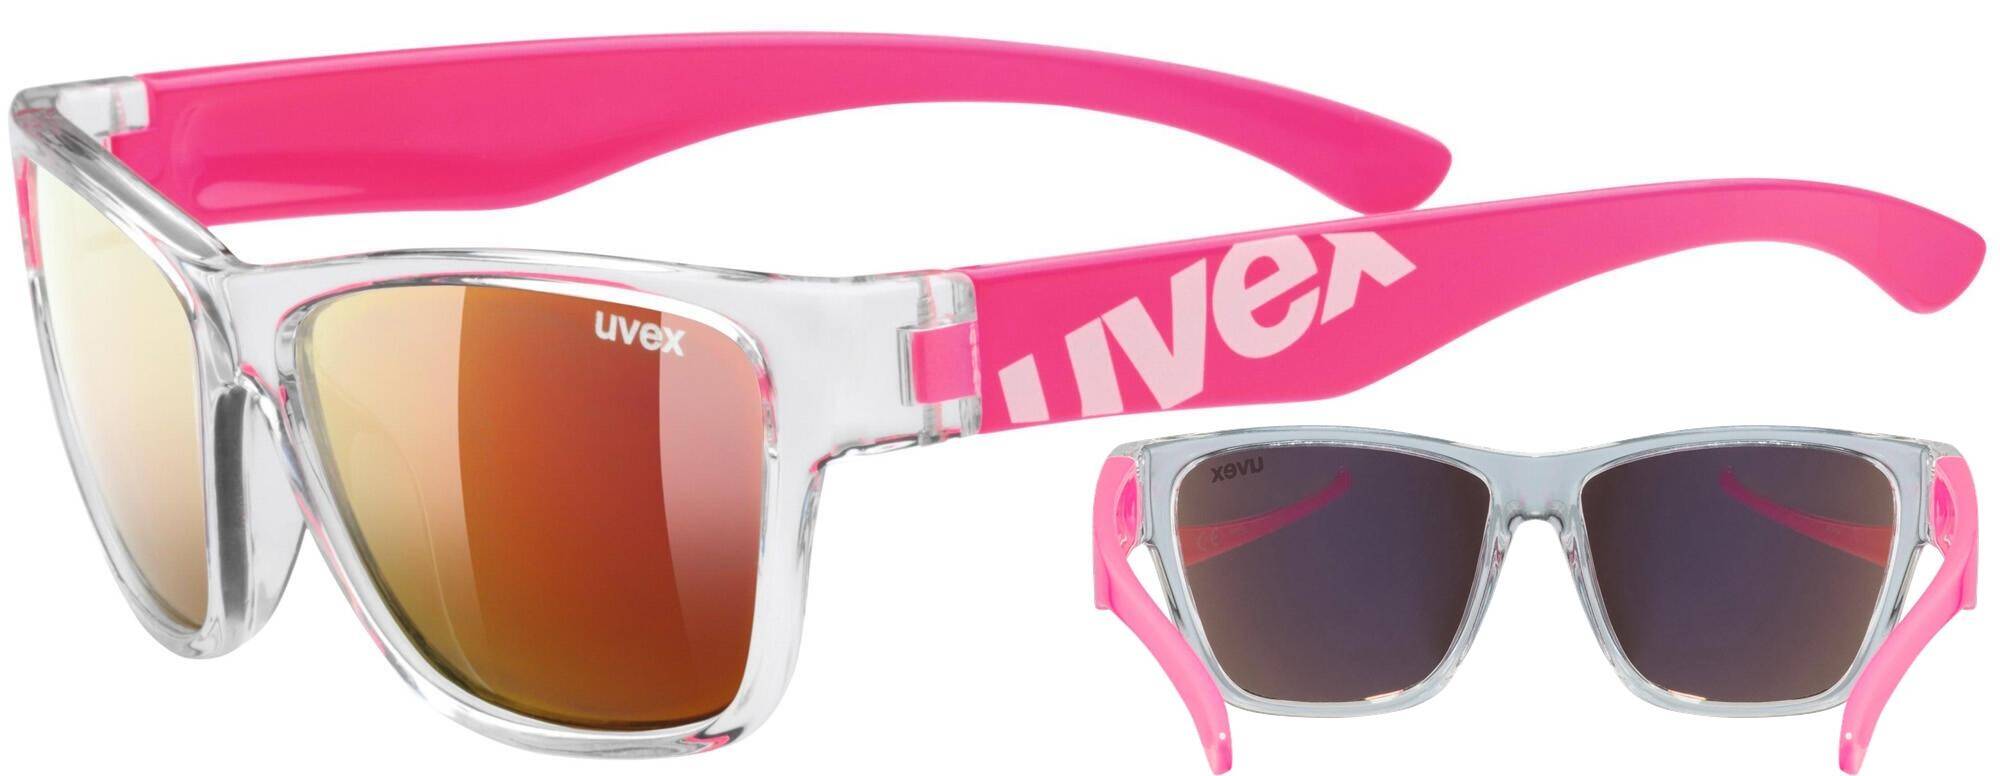 Okulary Uvex Sportstyle 508 różowe junior dziecięce